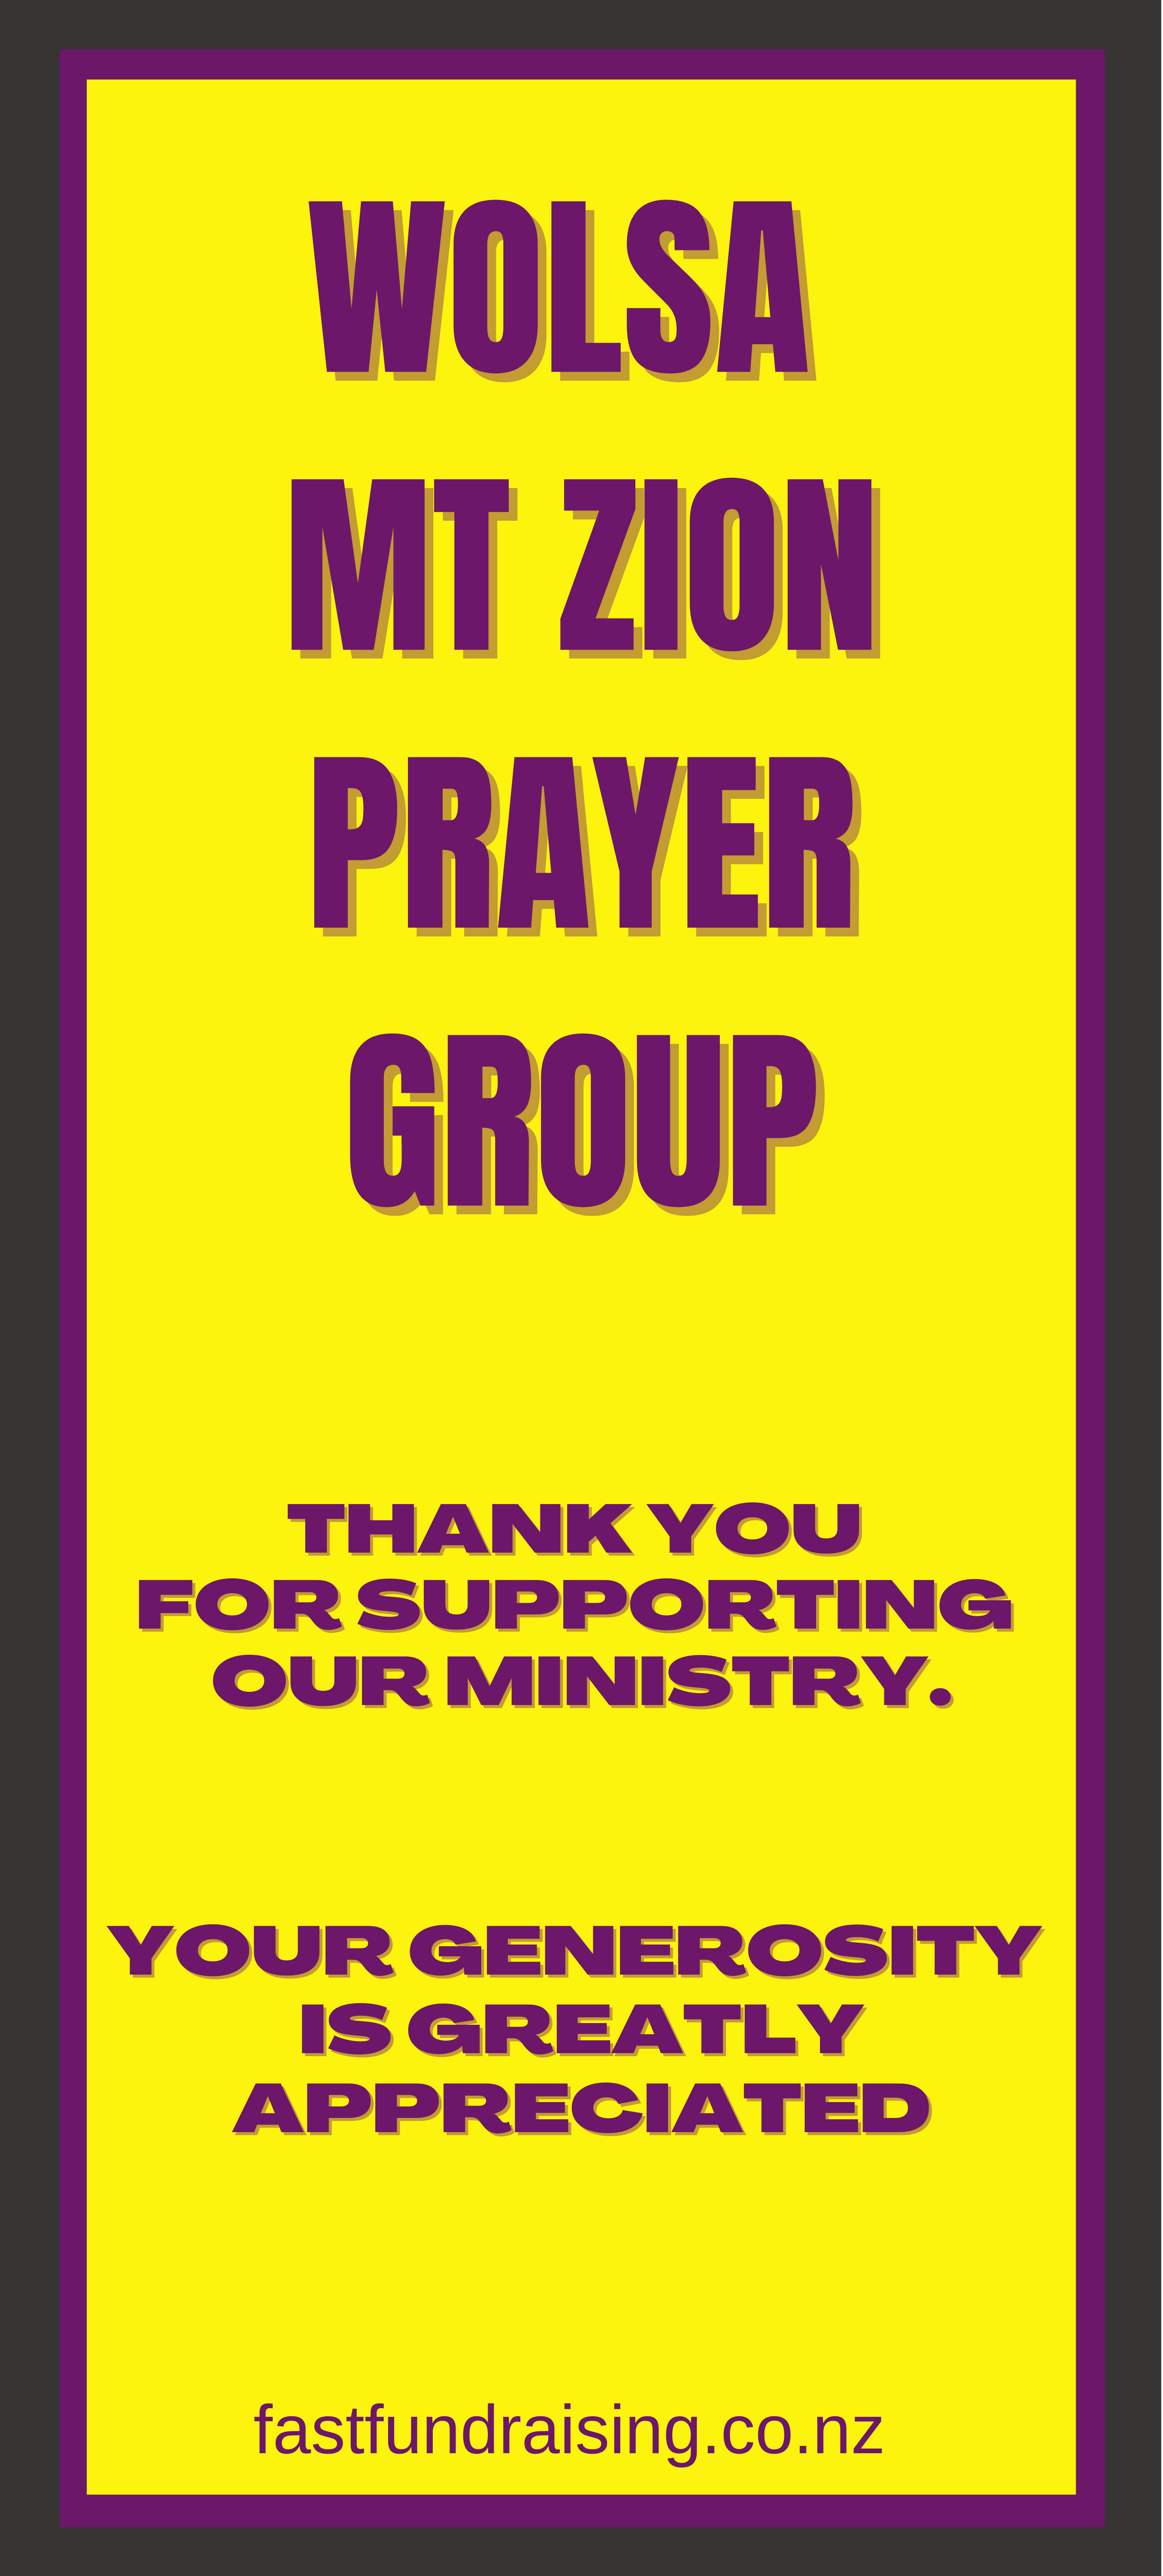 Prayer Group Fundraiser